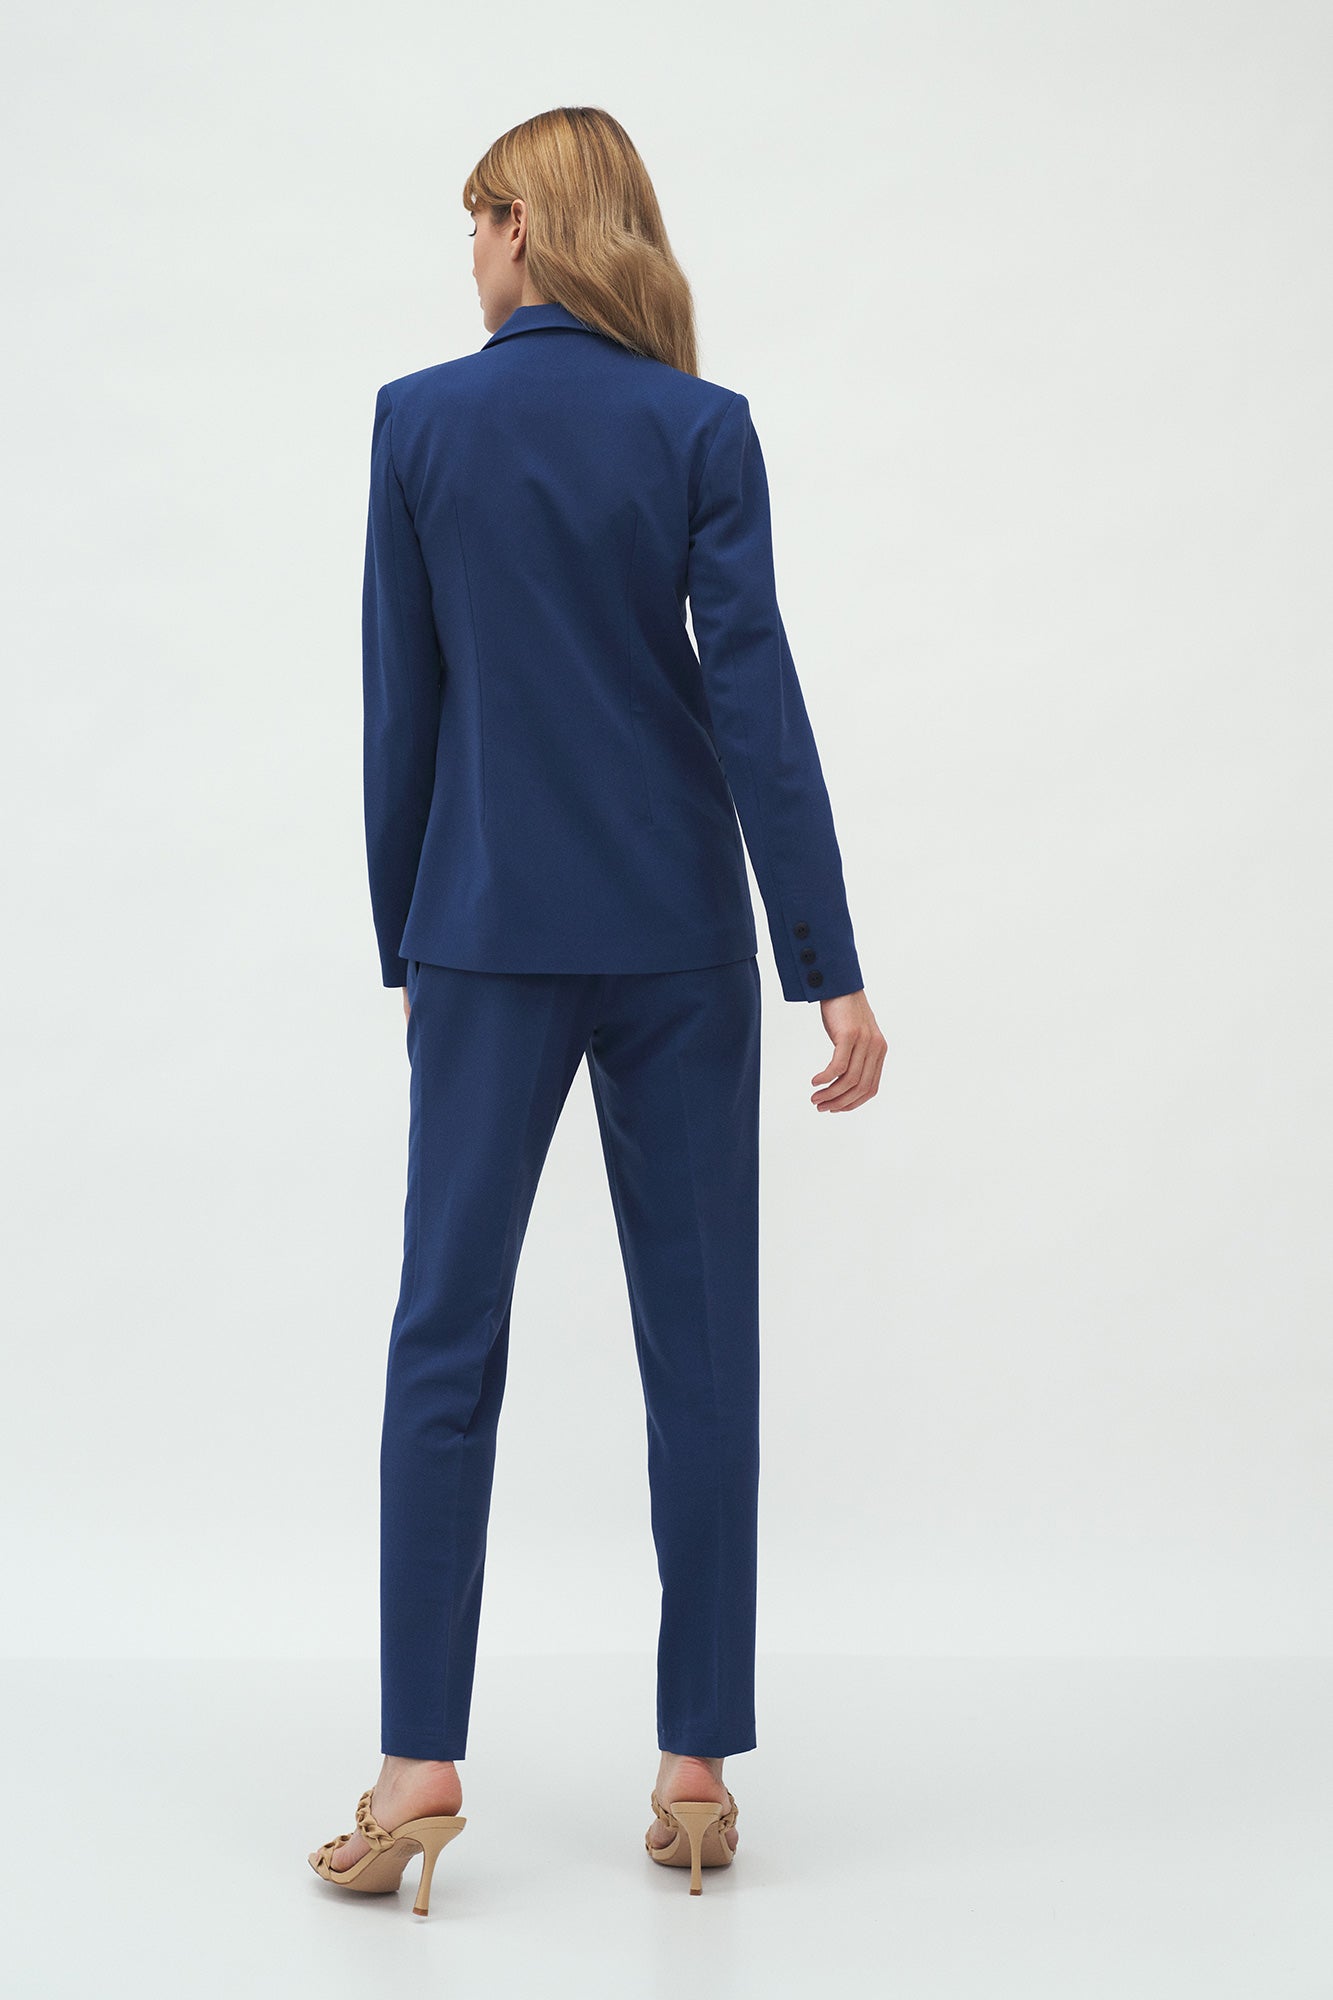 Le tailleur femme veste pantalon large bleu azur Illusion - My